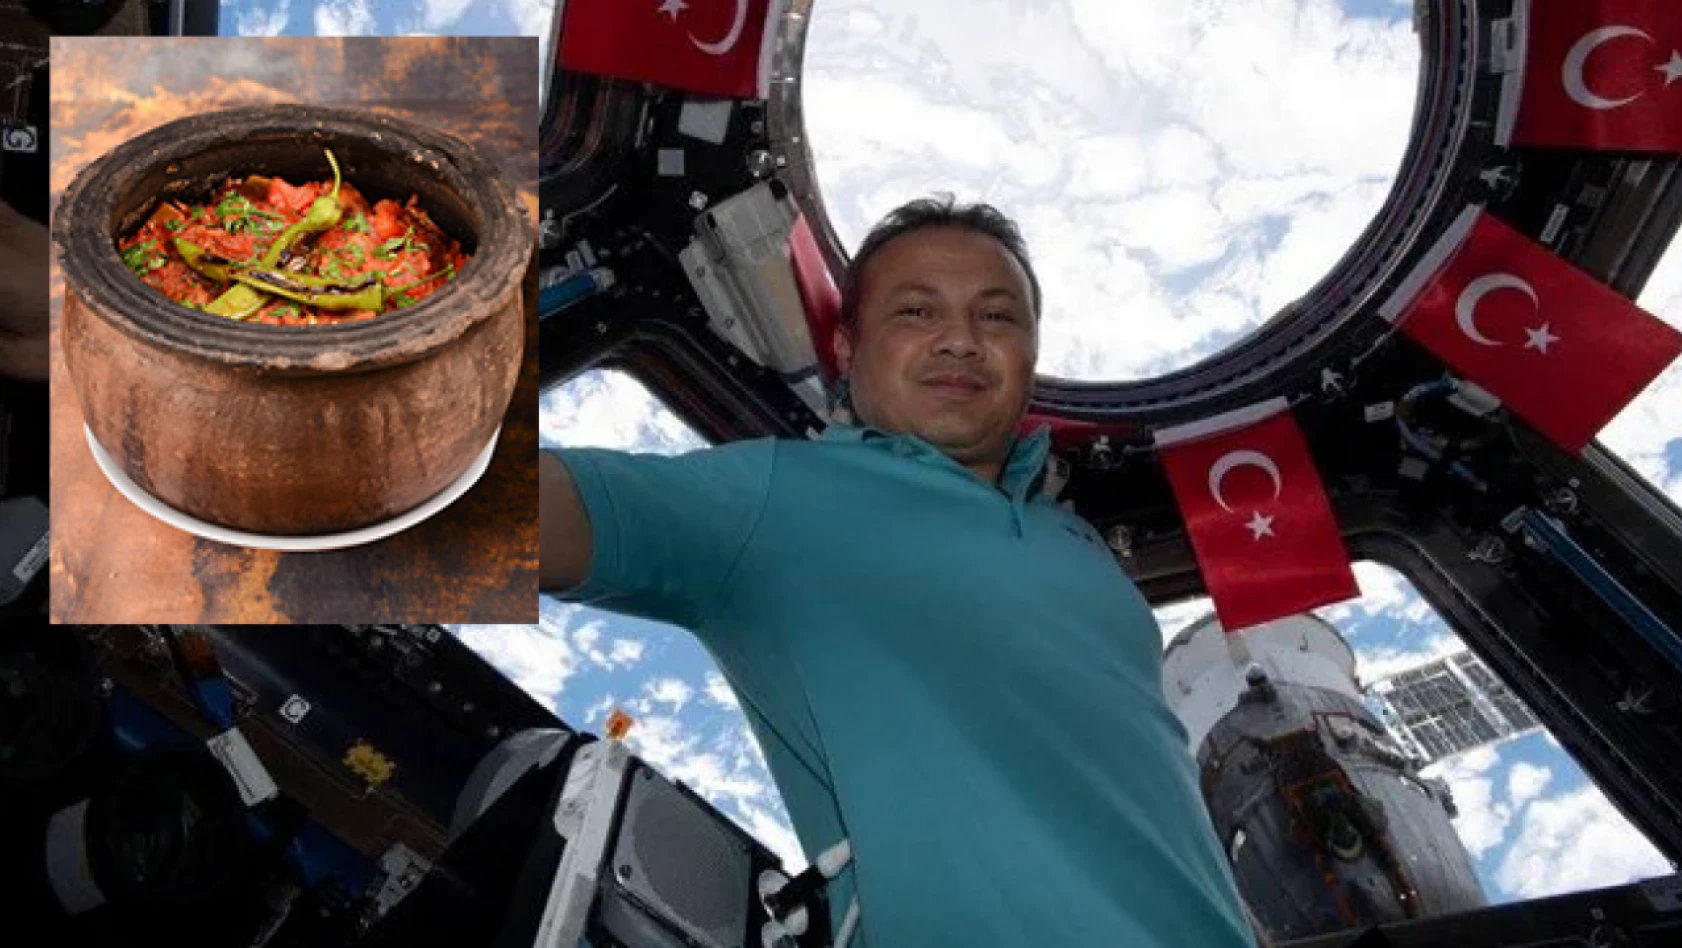 Türk Astronot Uzayda Güveç Hasreti Çekiyor